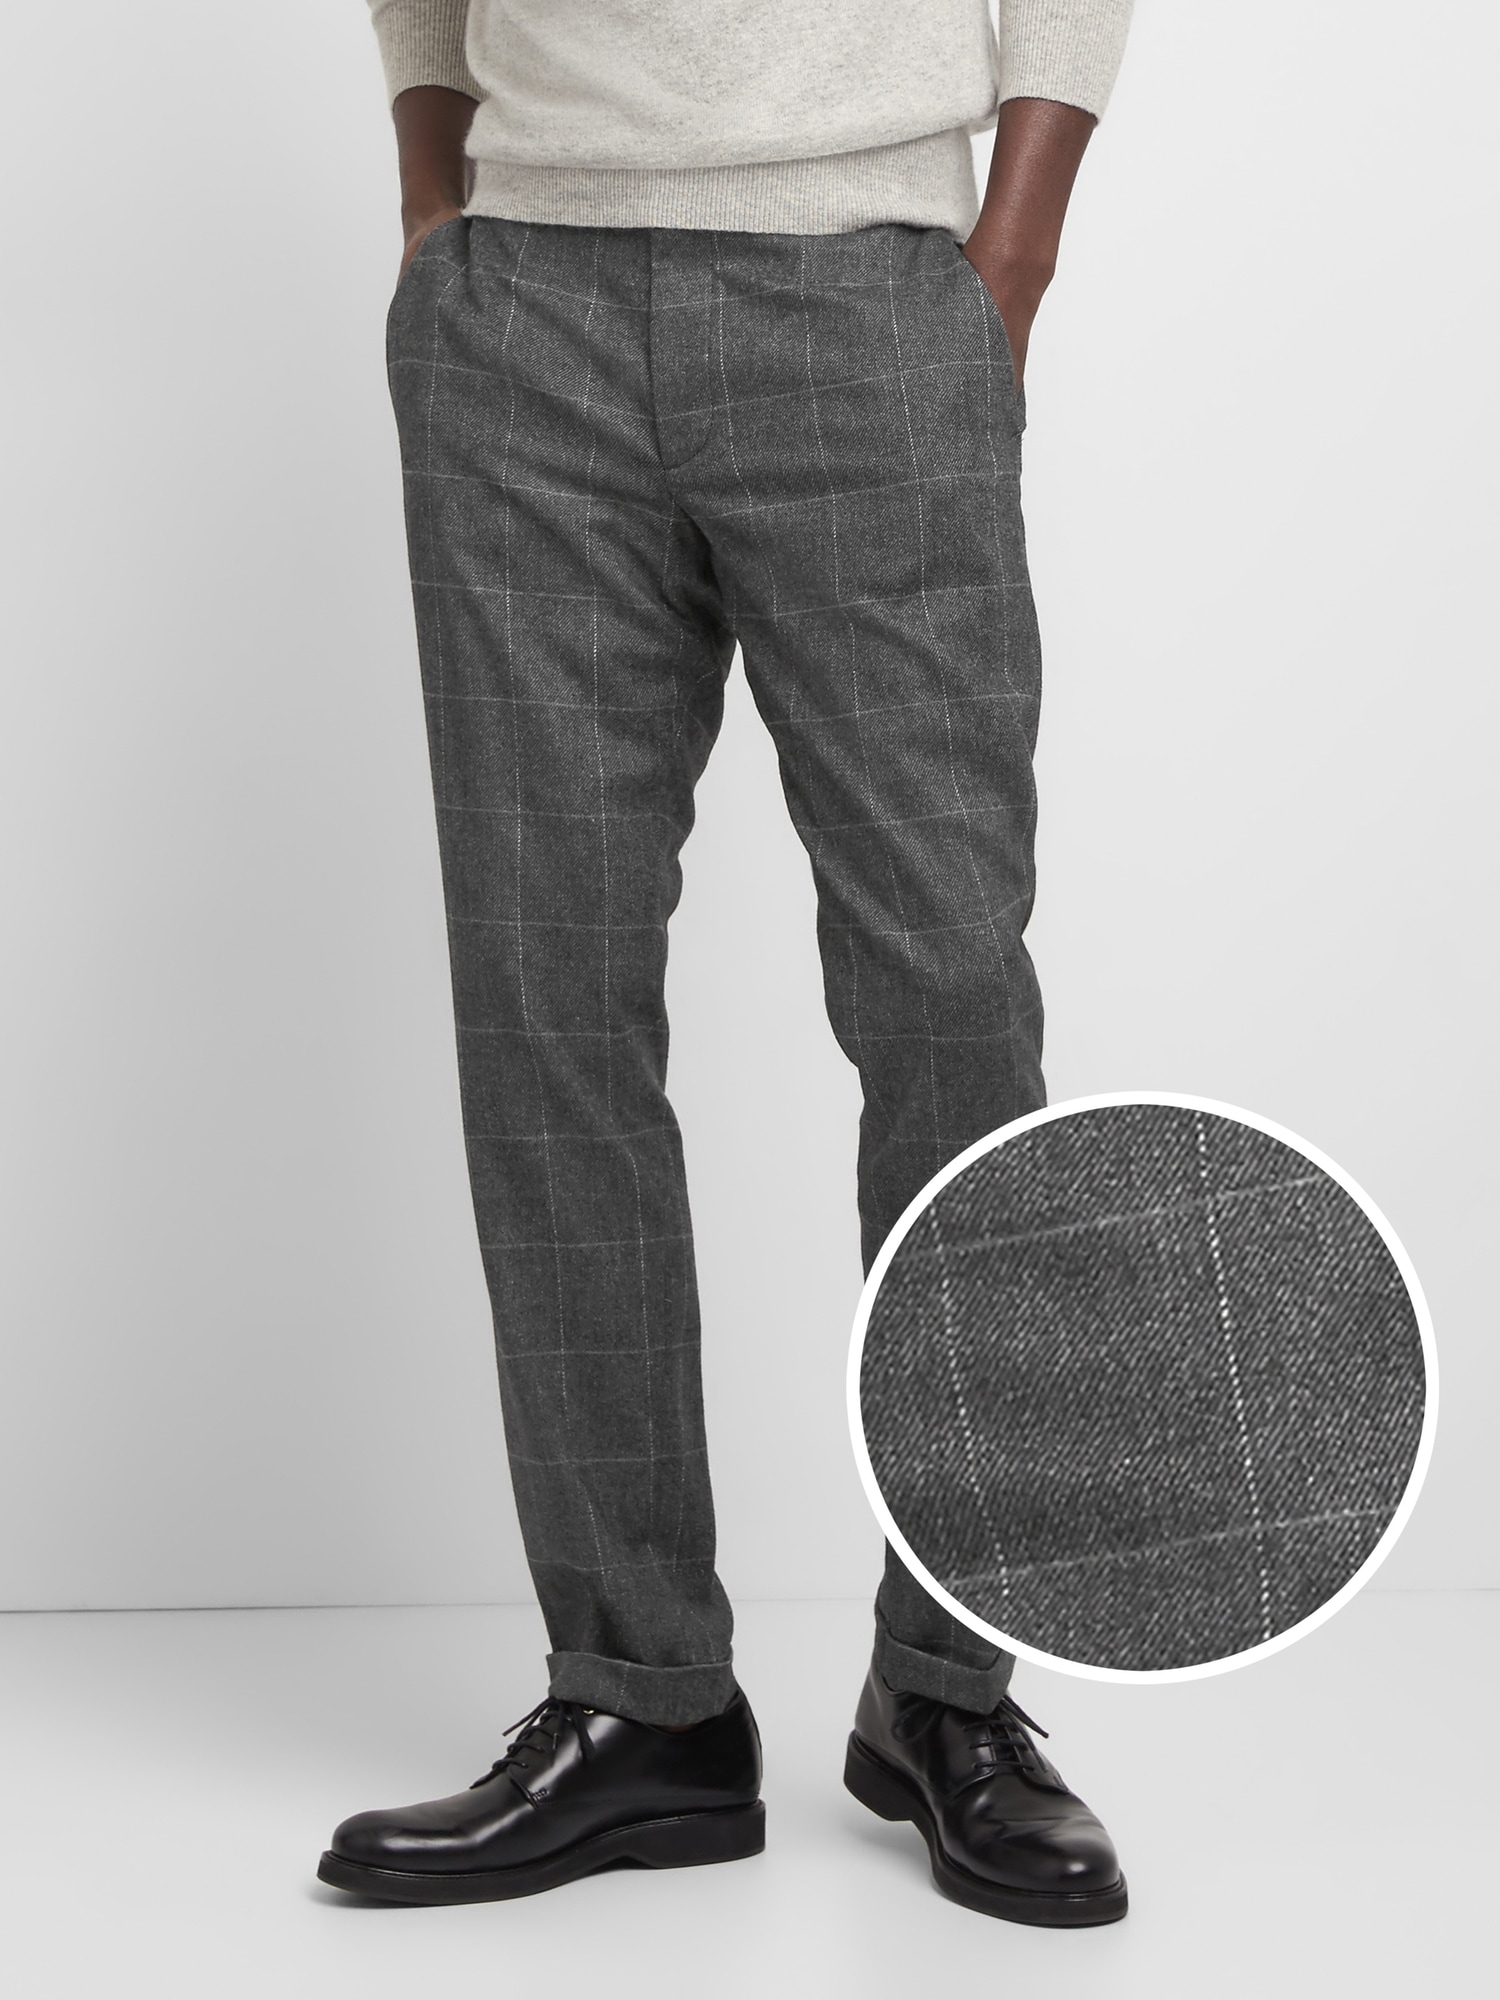 Wool Pants in Slim Fit with GapFlex | Gap